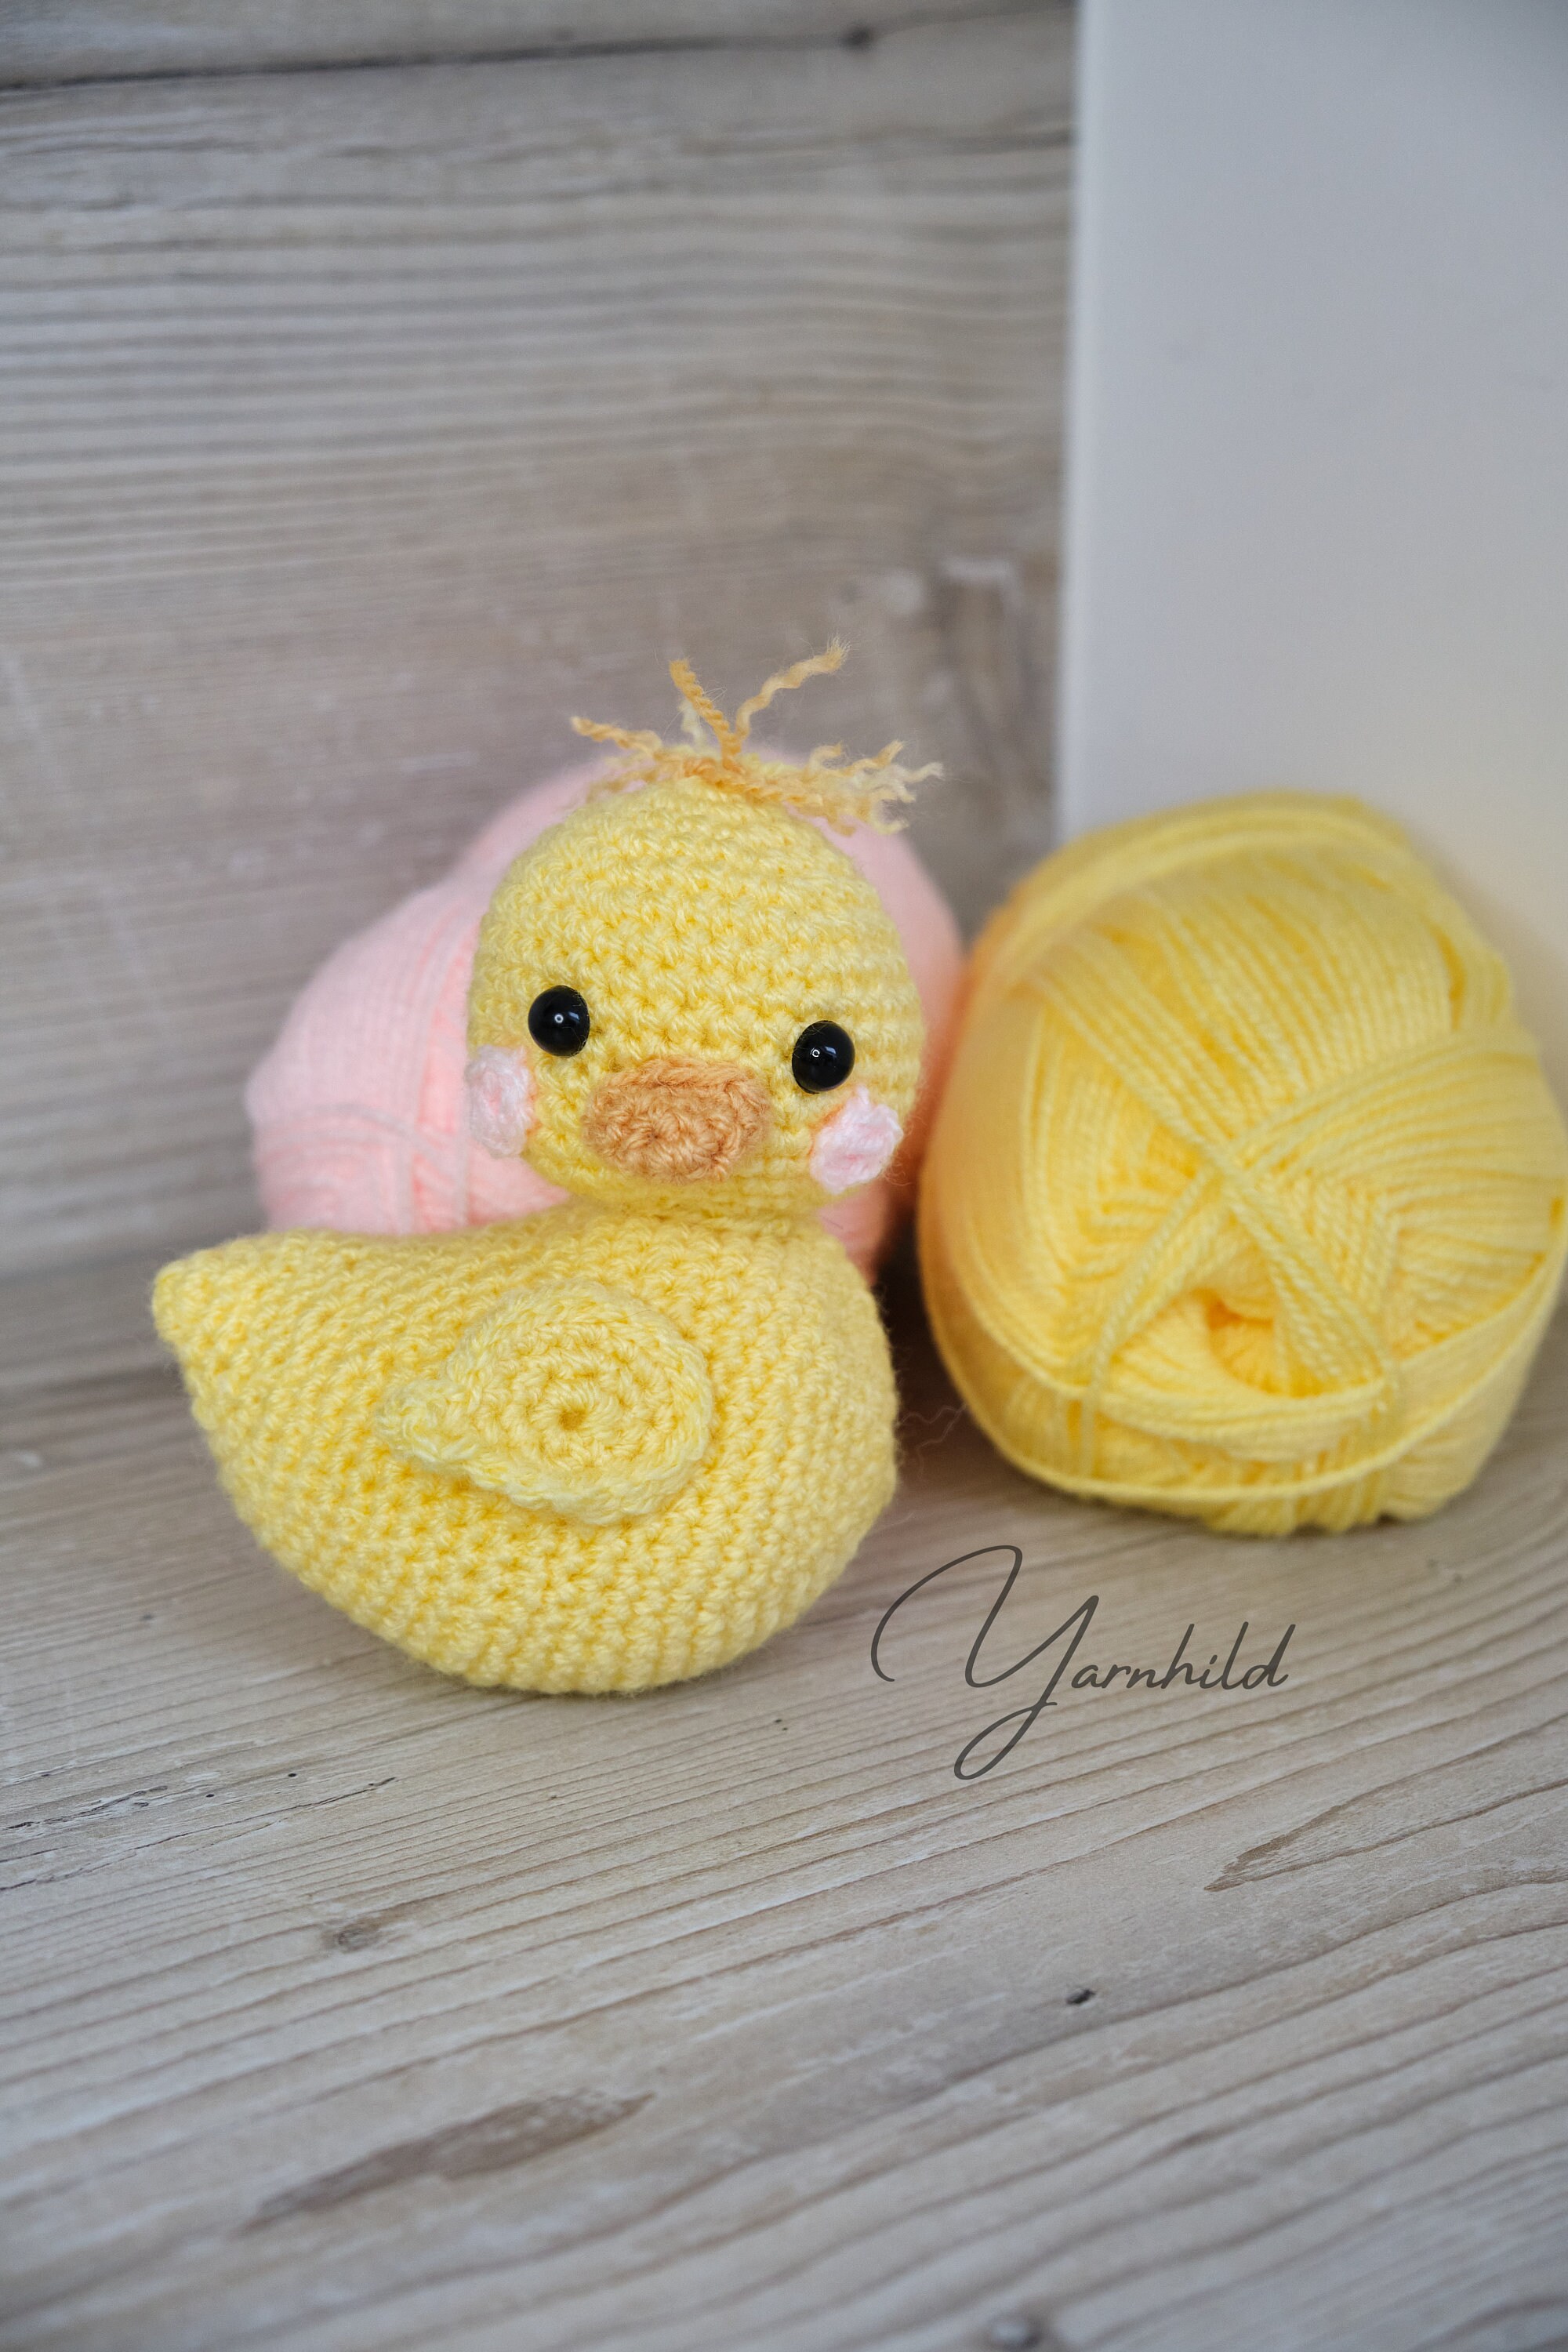 Cute Amigurumi Crochet Duck Pattern Crochet Amigurumi Pattern Für a Plush  Duck Häkelanleitung Für Eine Ente 